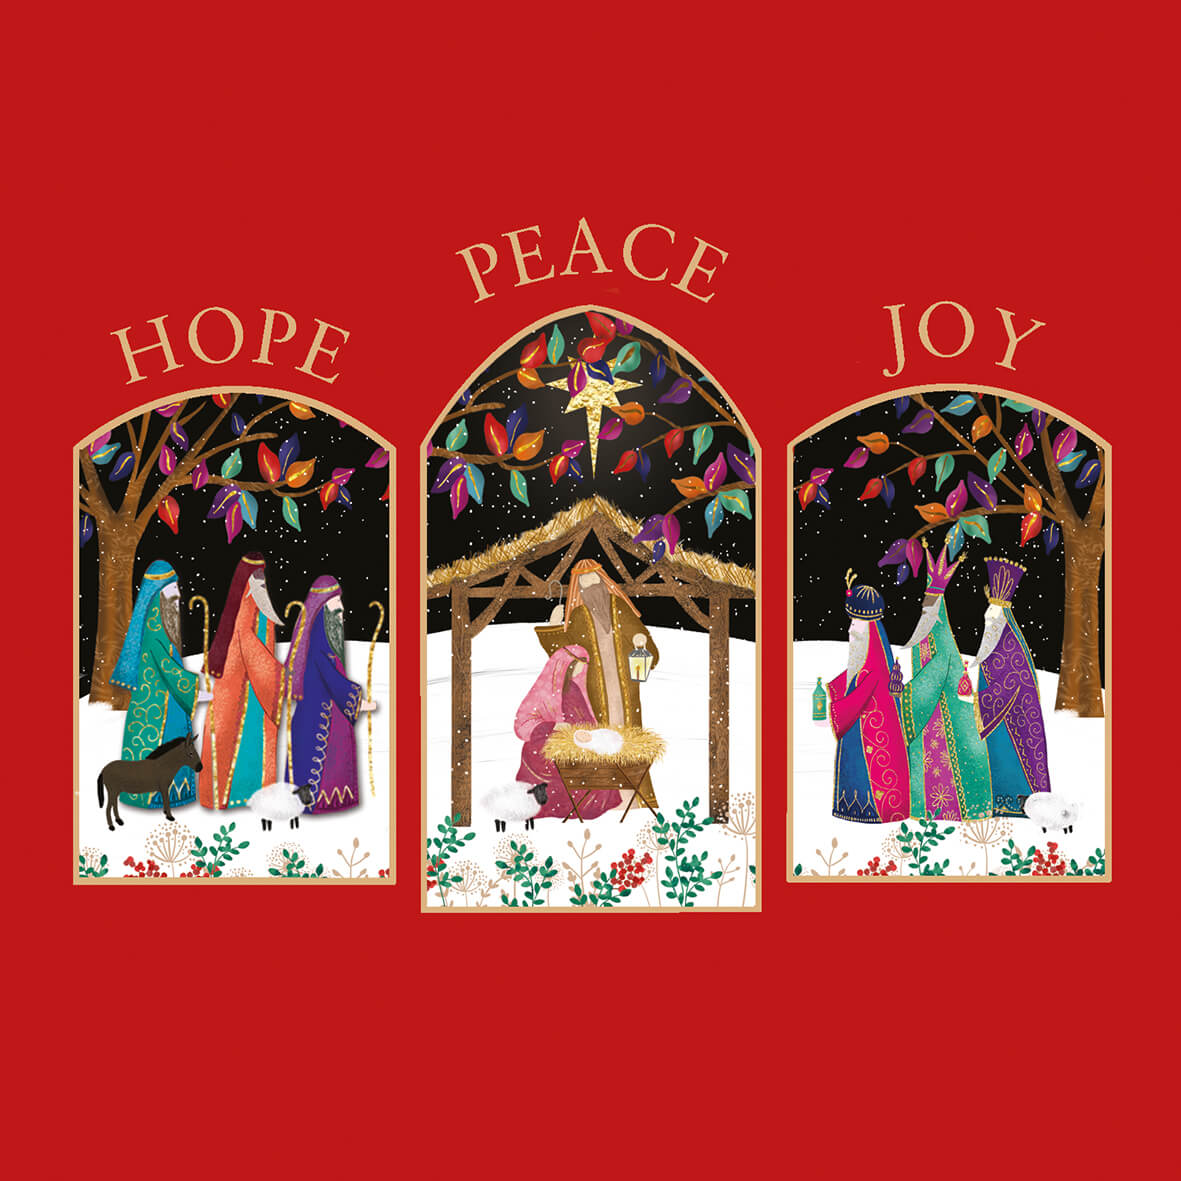 Three_nativity_scenes_with_hope_peace_joy_caption